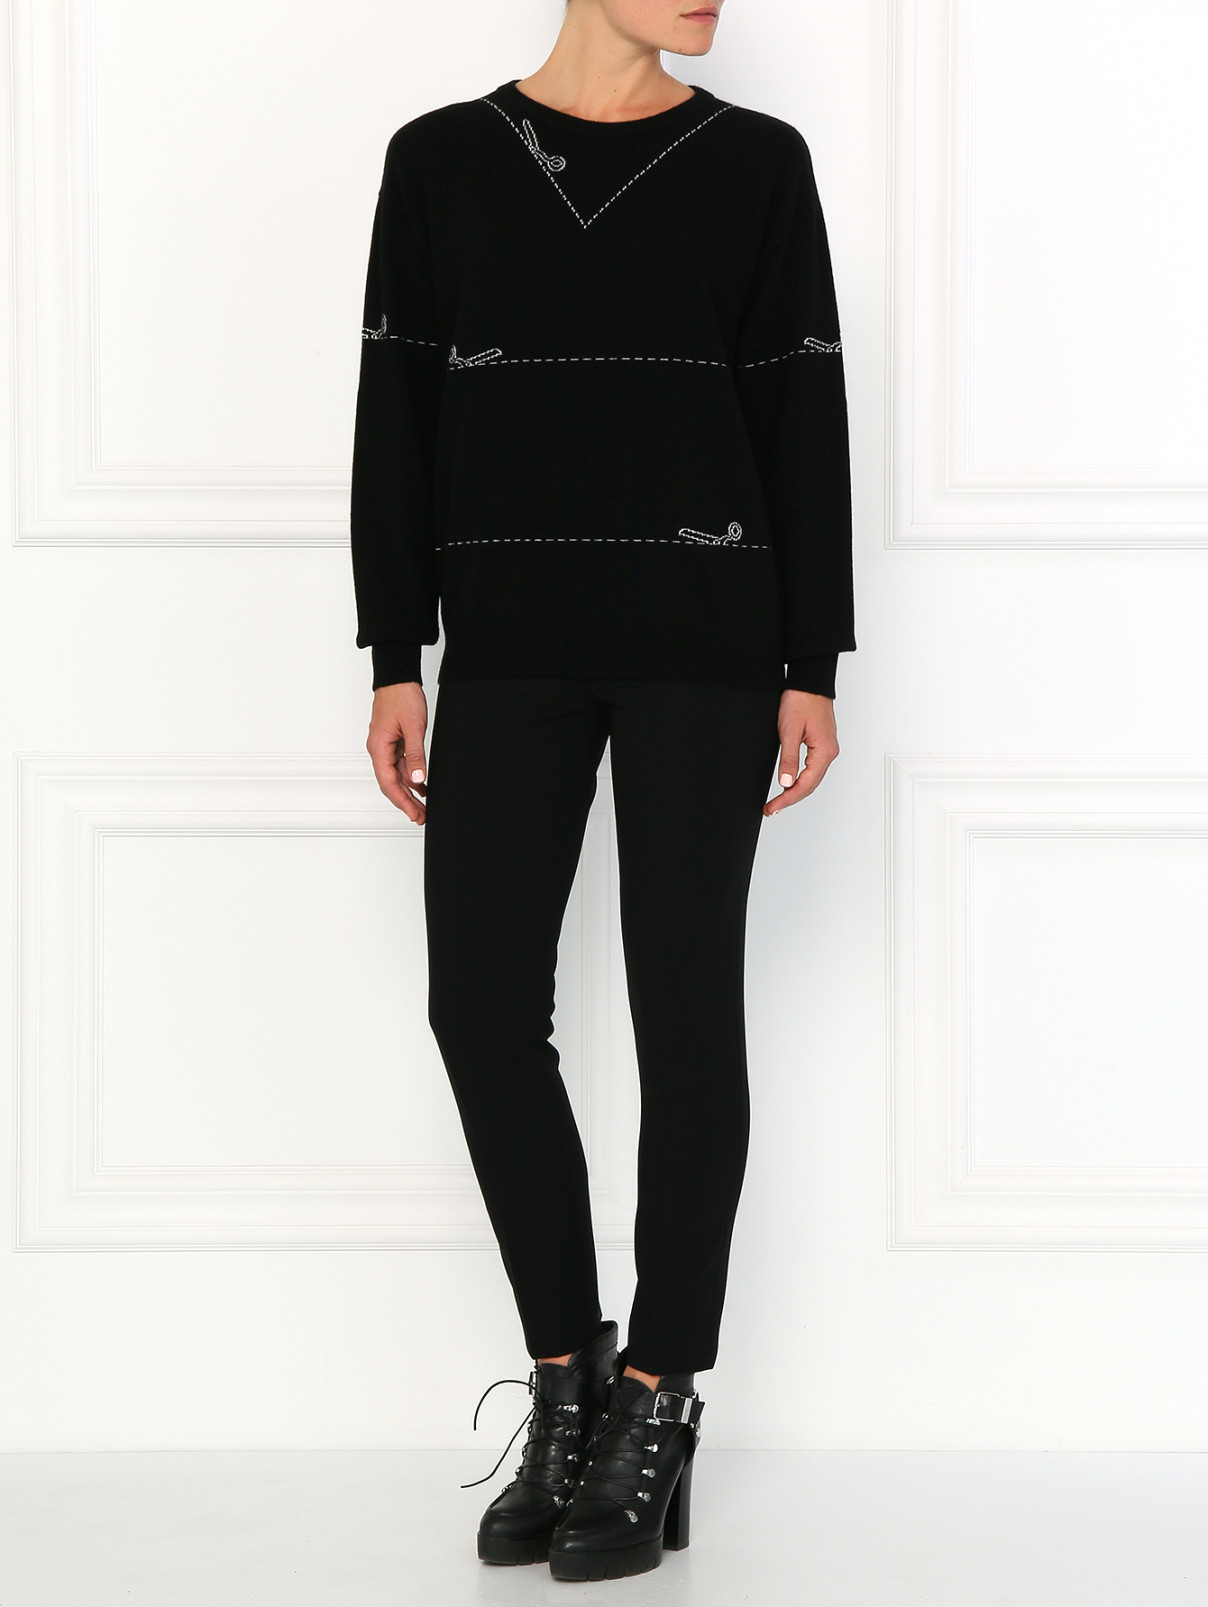 Кашемировый джемпер с узором Moschino Couture  –  Модель Общий вид  – Цвет:  Черный